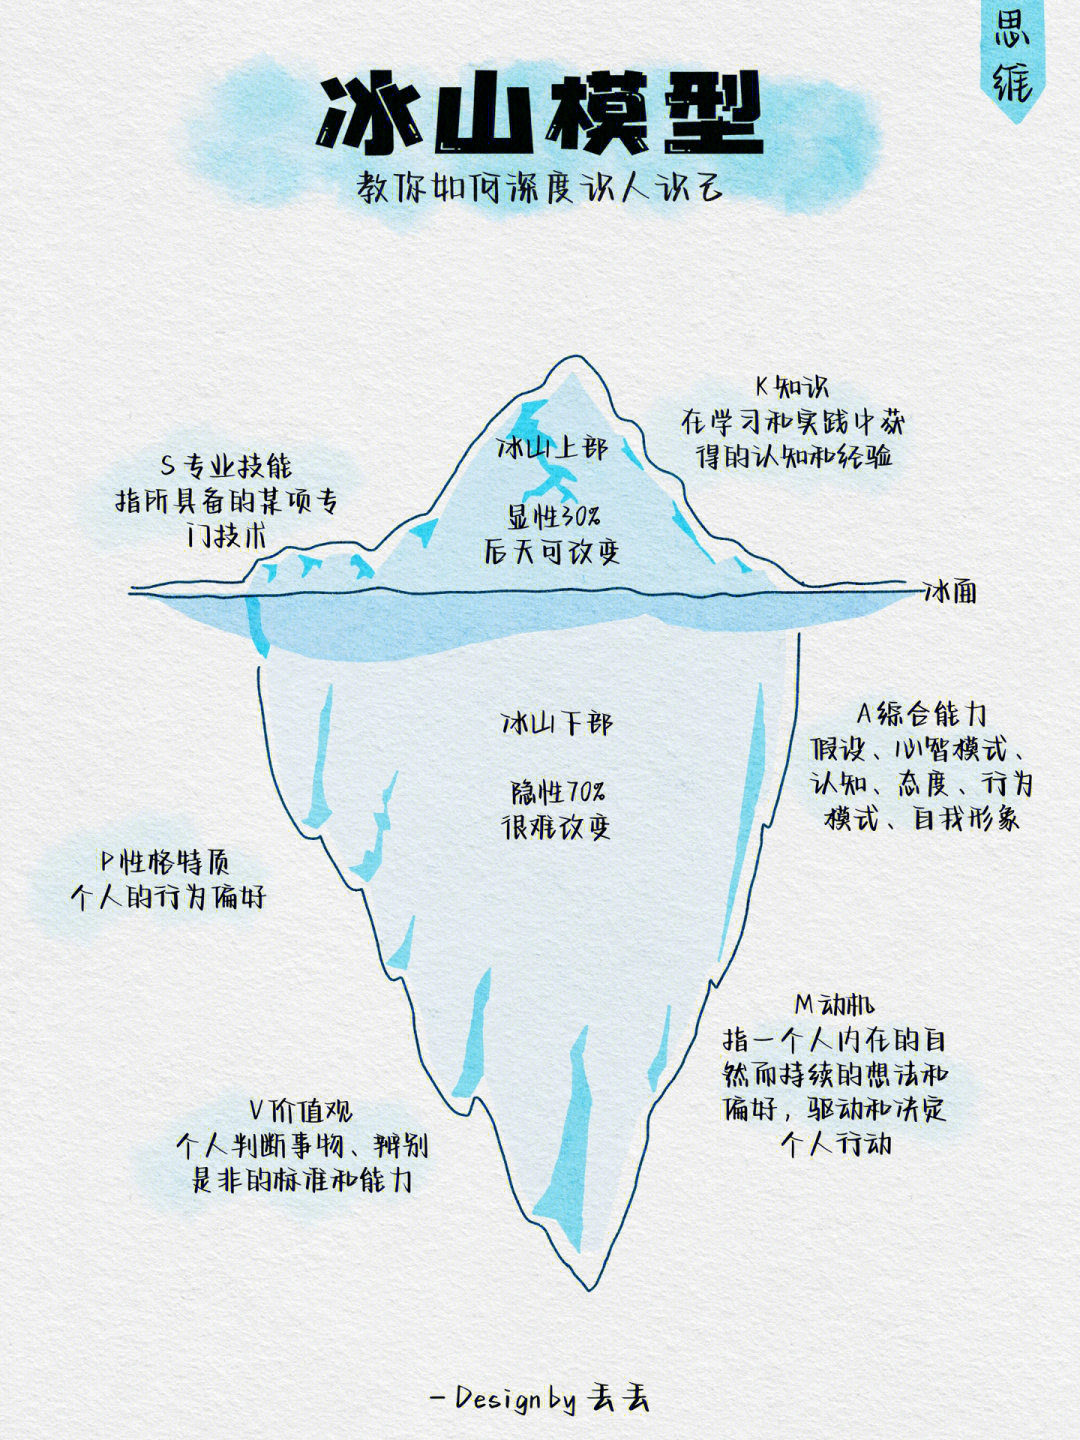 语文素养的冰山模型图图片